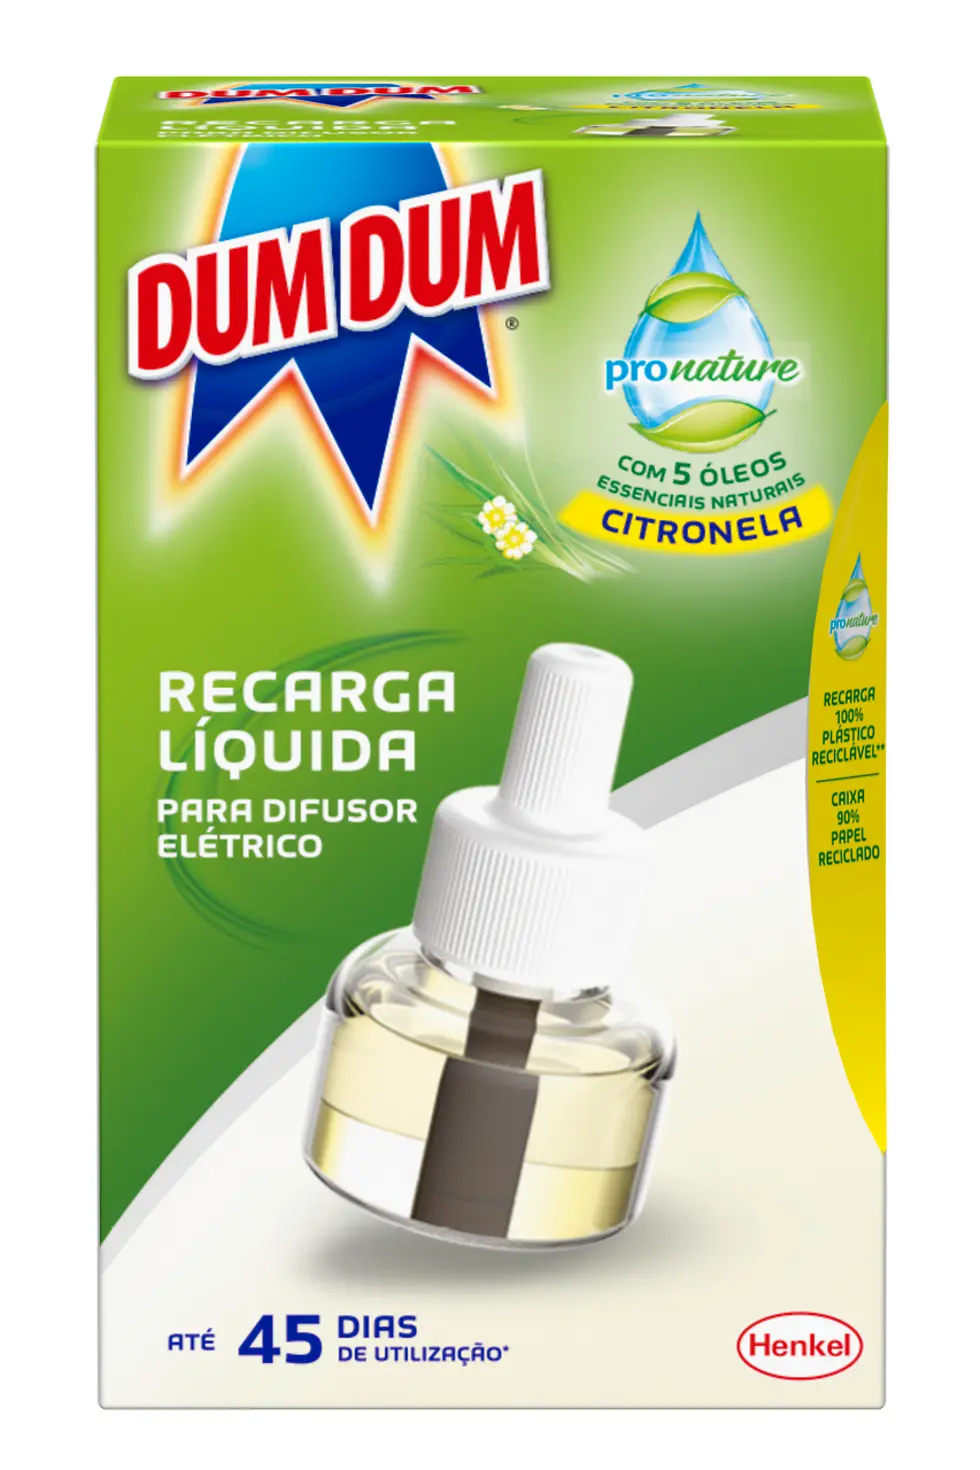 Dum Dum ProNature apresentam nova fórmula sustentável além de embalagens eco-friendly